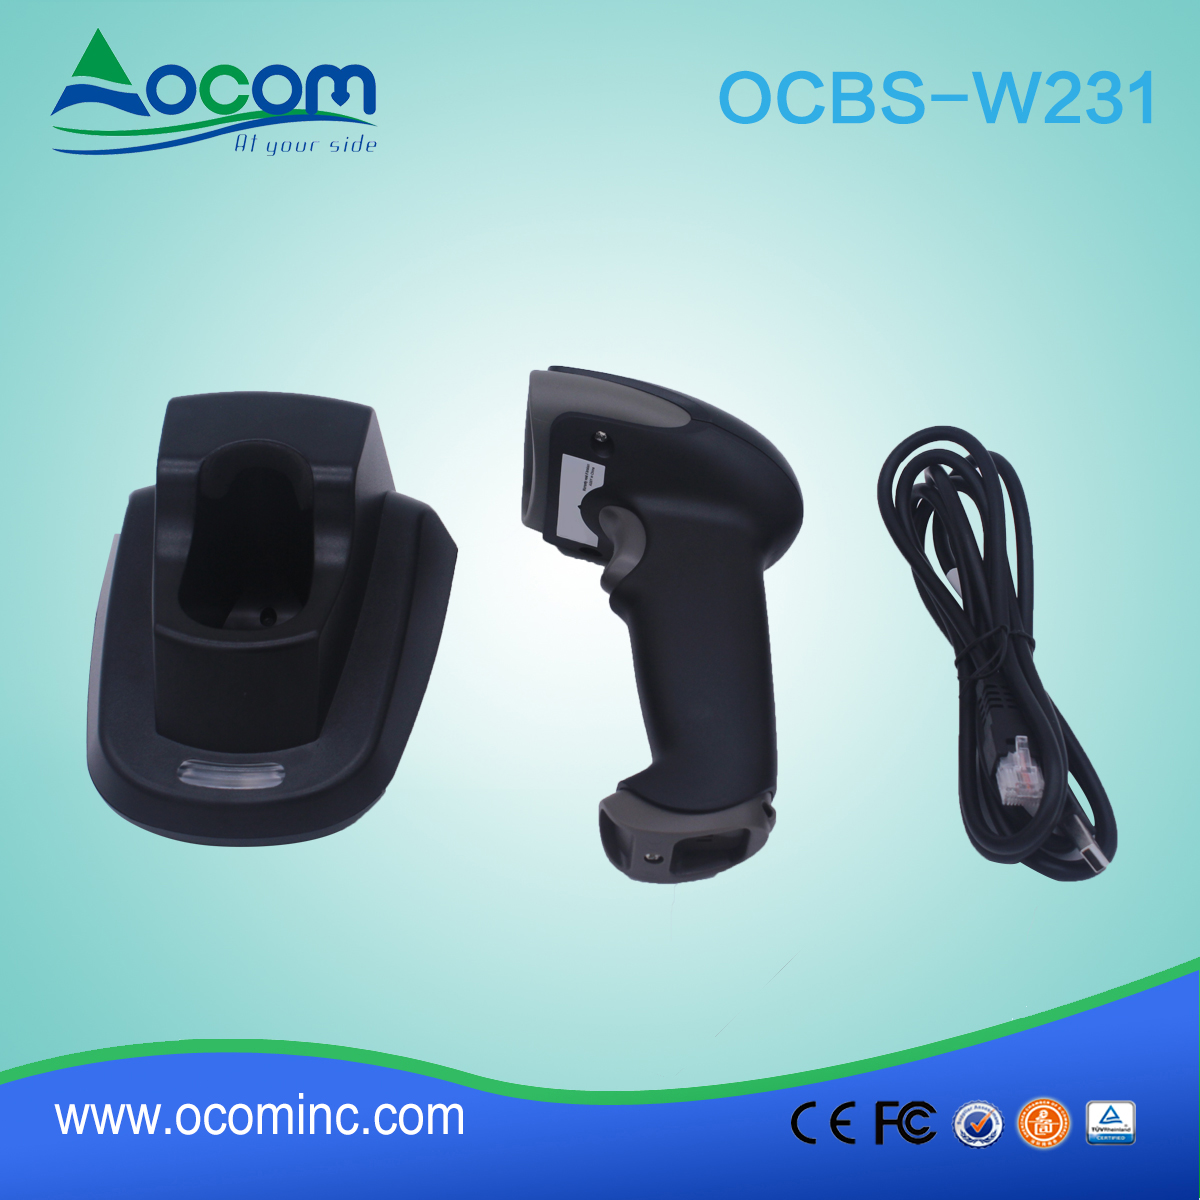 (OCBS-W231) Escáner de código de barras de 433 MHz 2D robusto con cuna